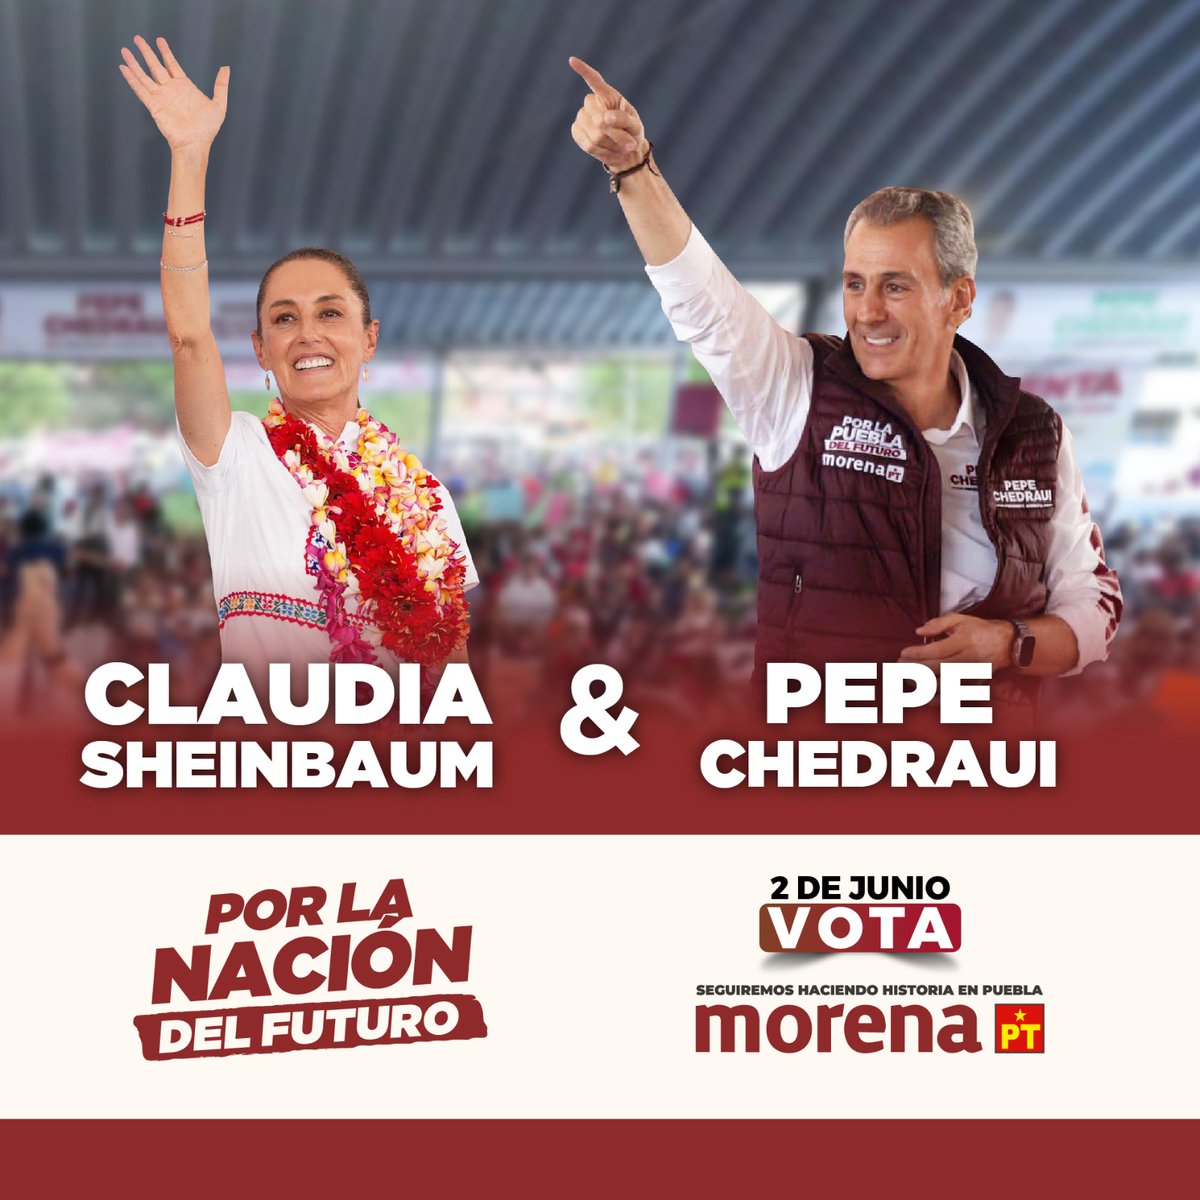 Todos con Pepe Chedraui #Puebla #MorenaVaConChedraui